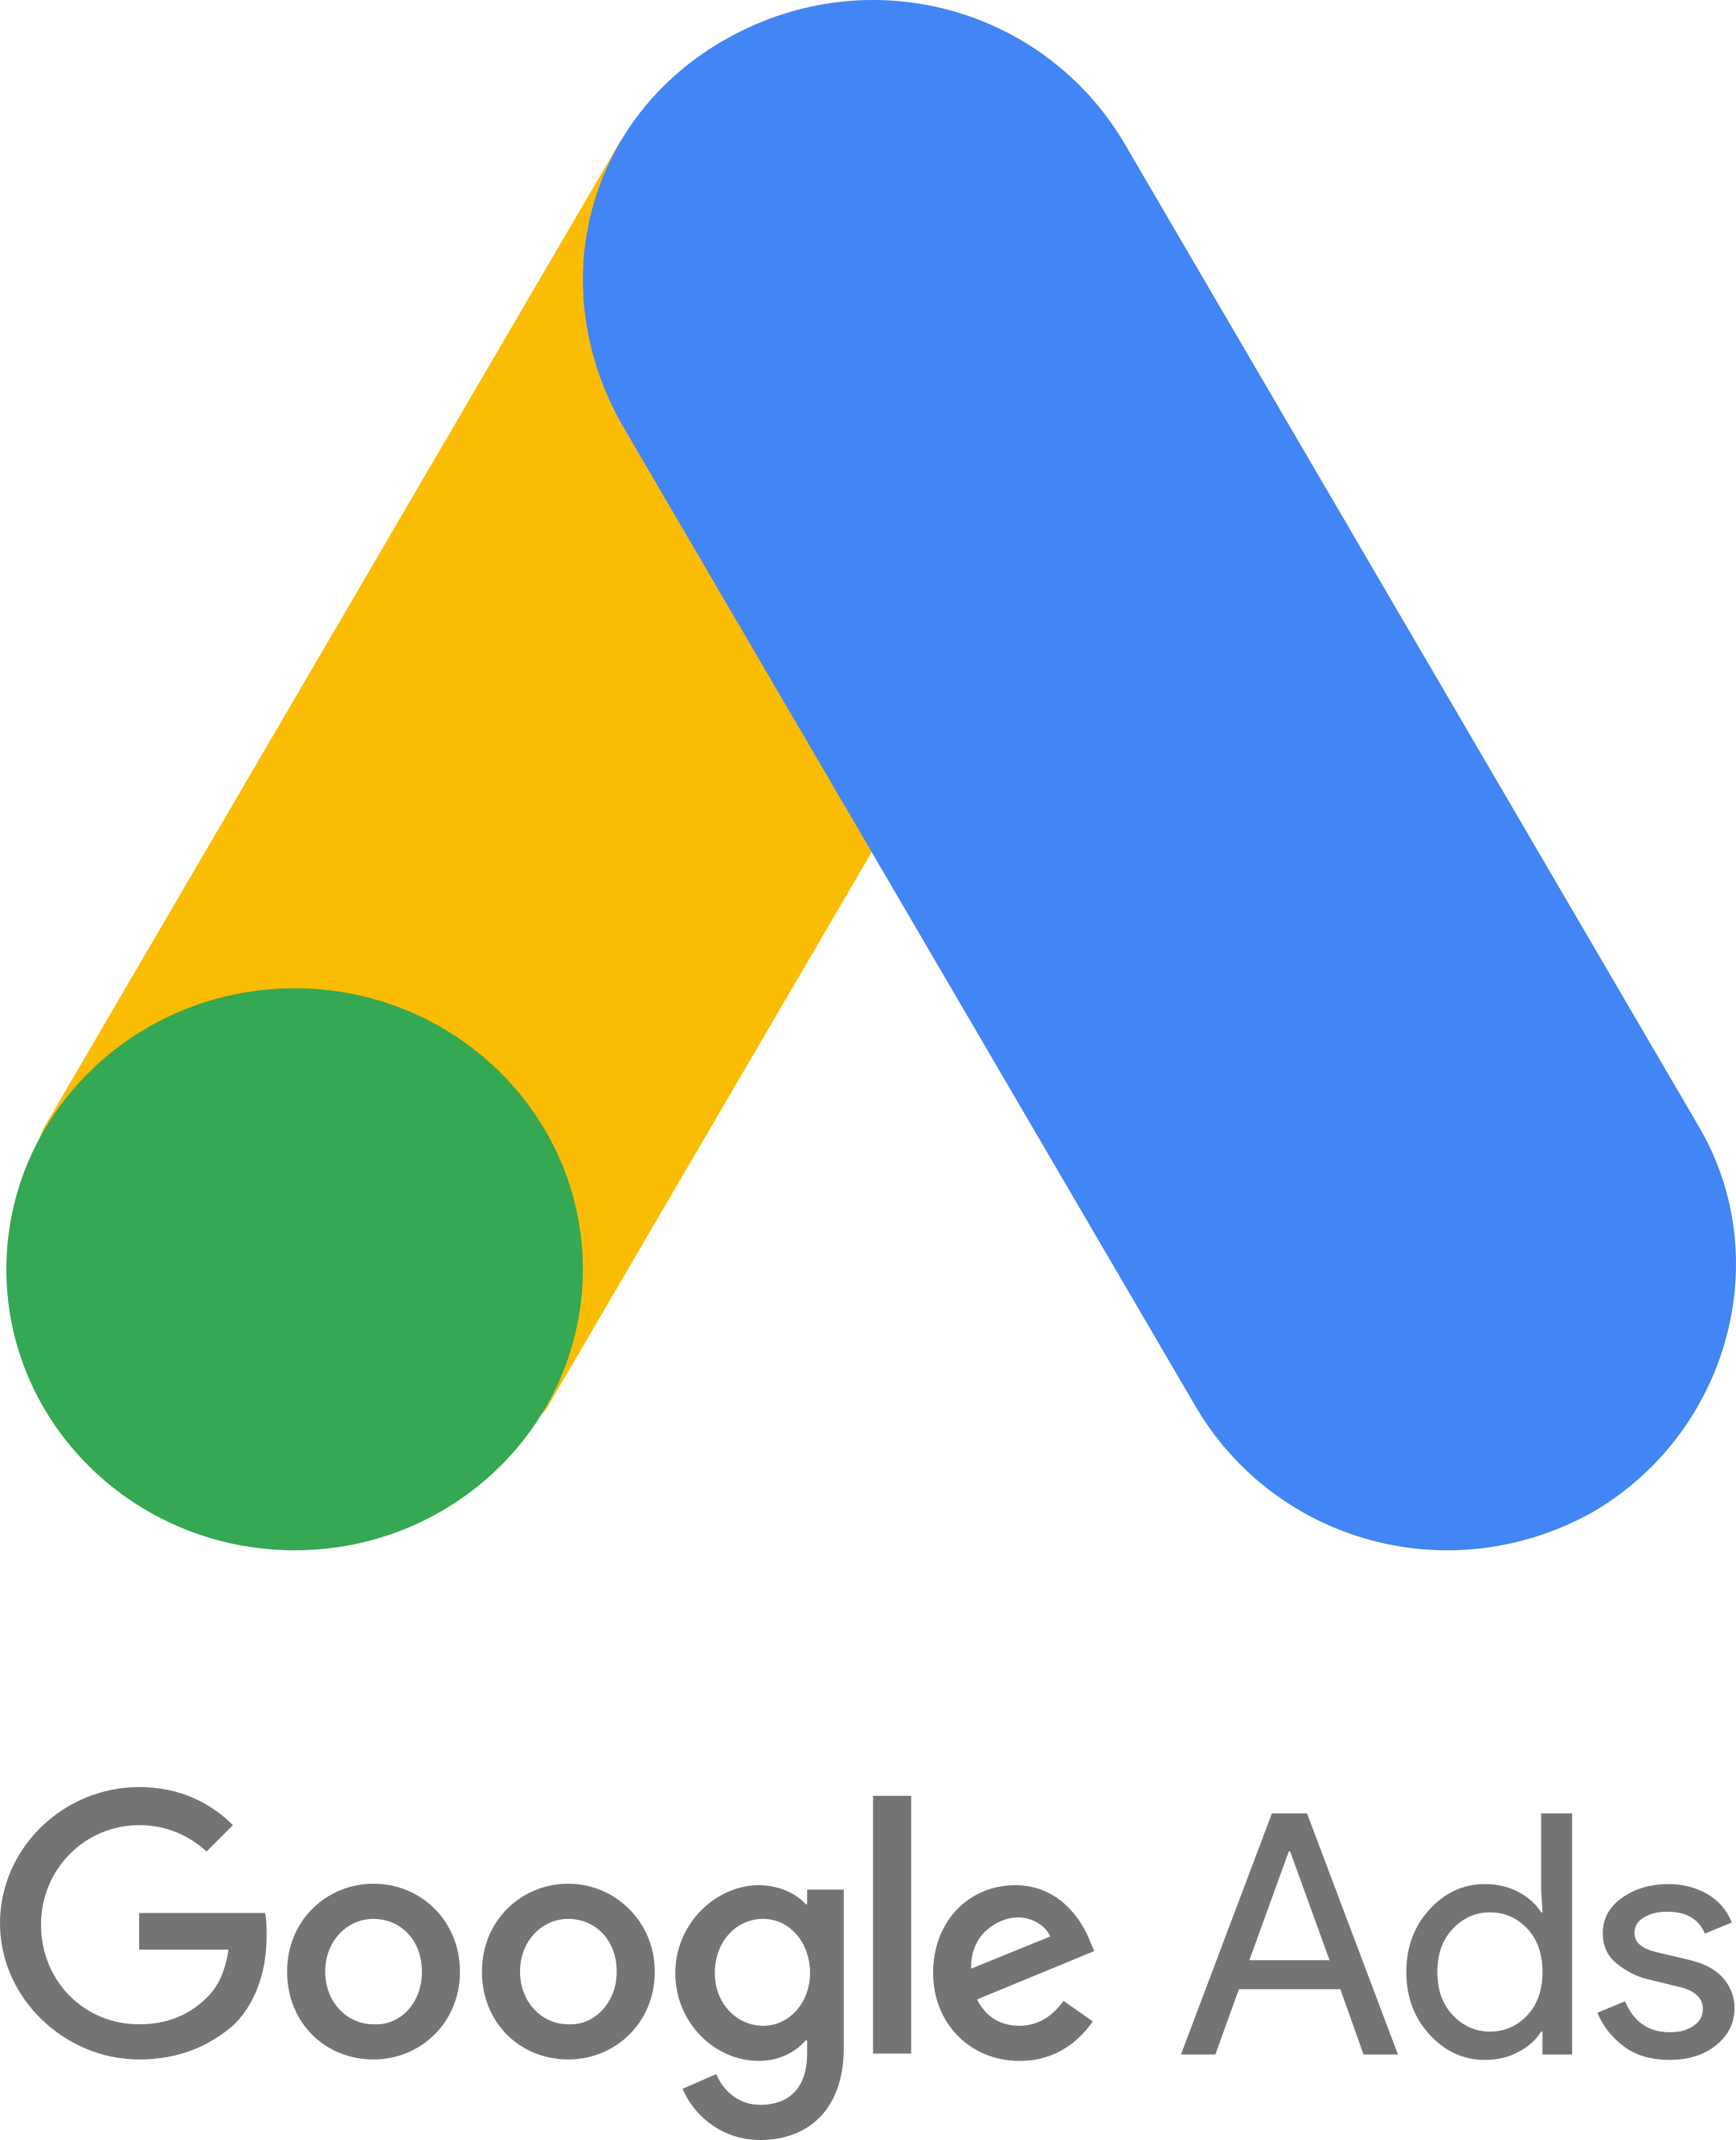 Google Ads Logo PNG Image